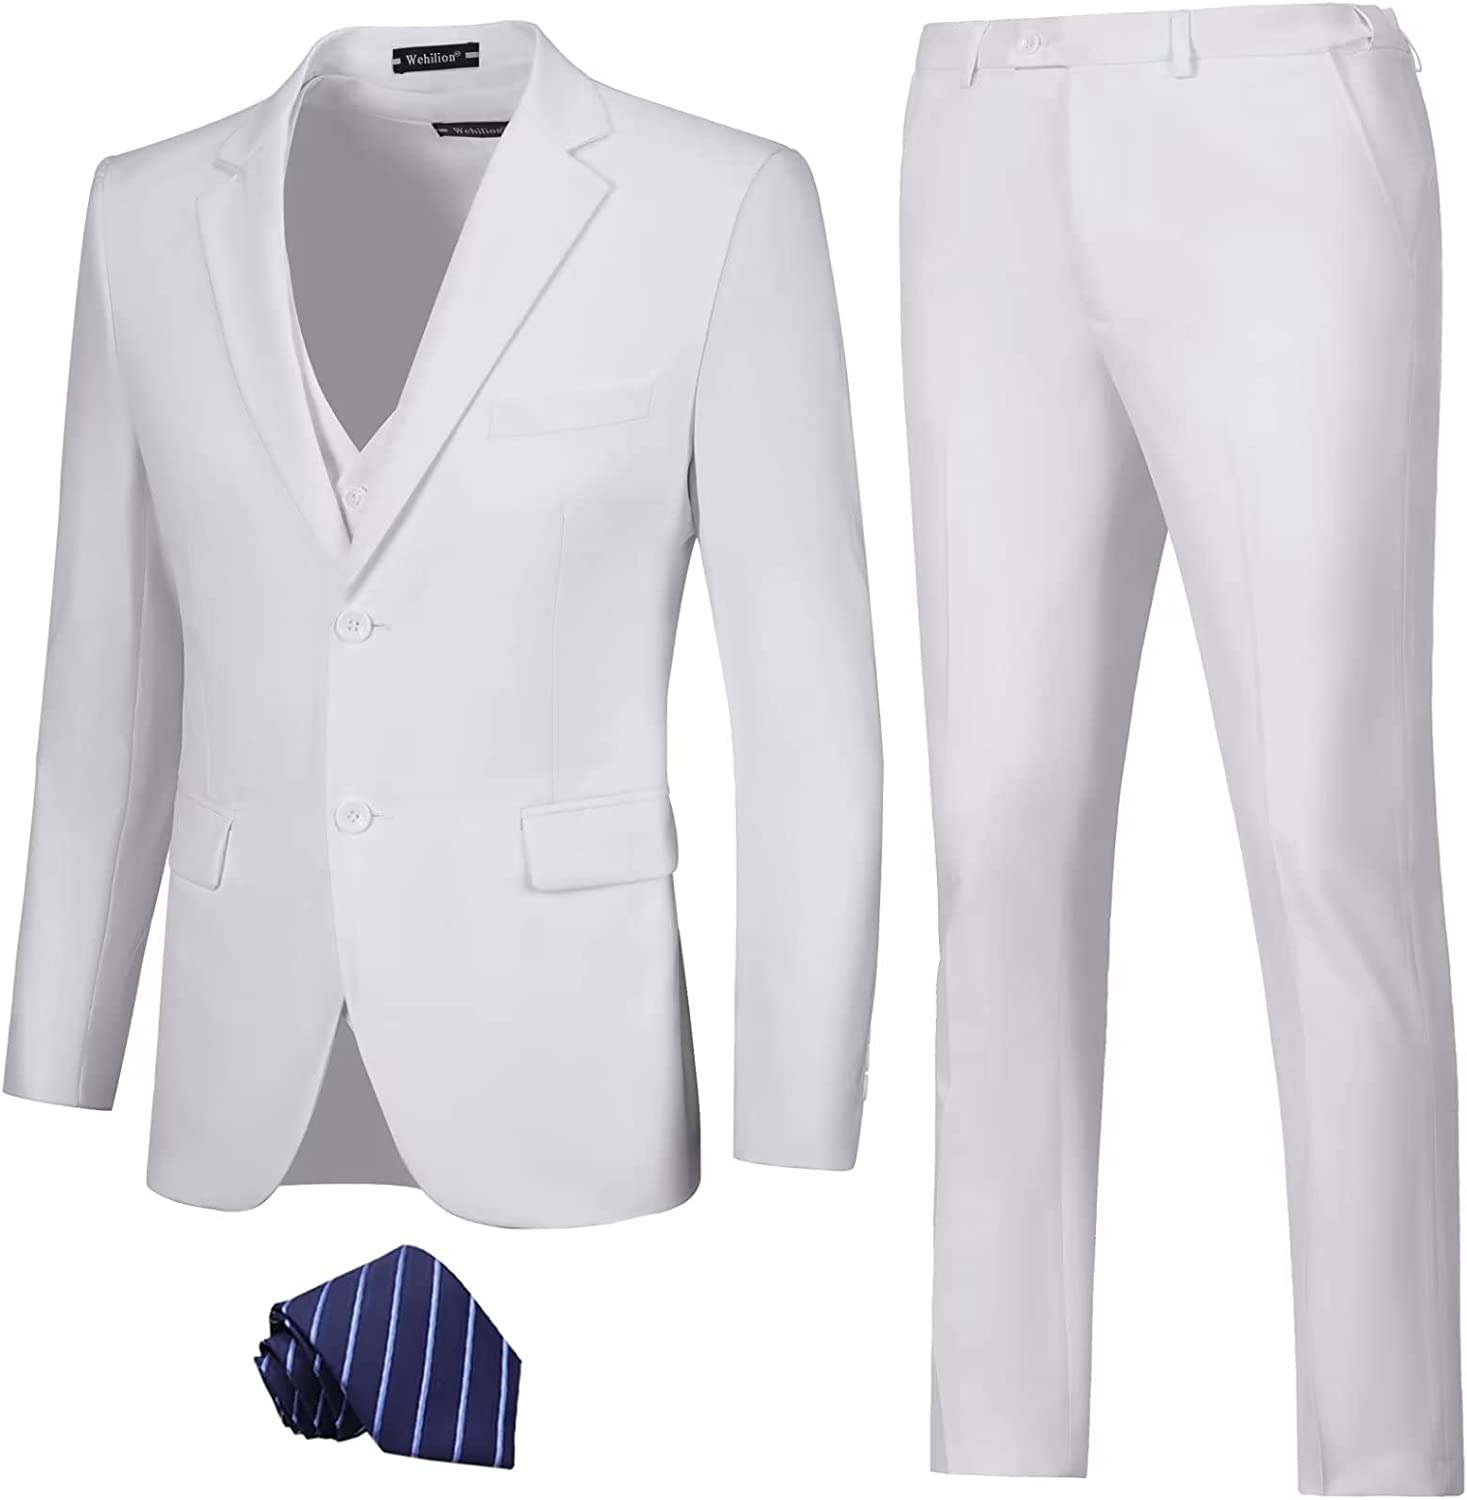 LOPEN STU Mens Suit Slim Fit 3 Piece Wedding Outfit Prom Suits for Men ...